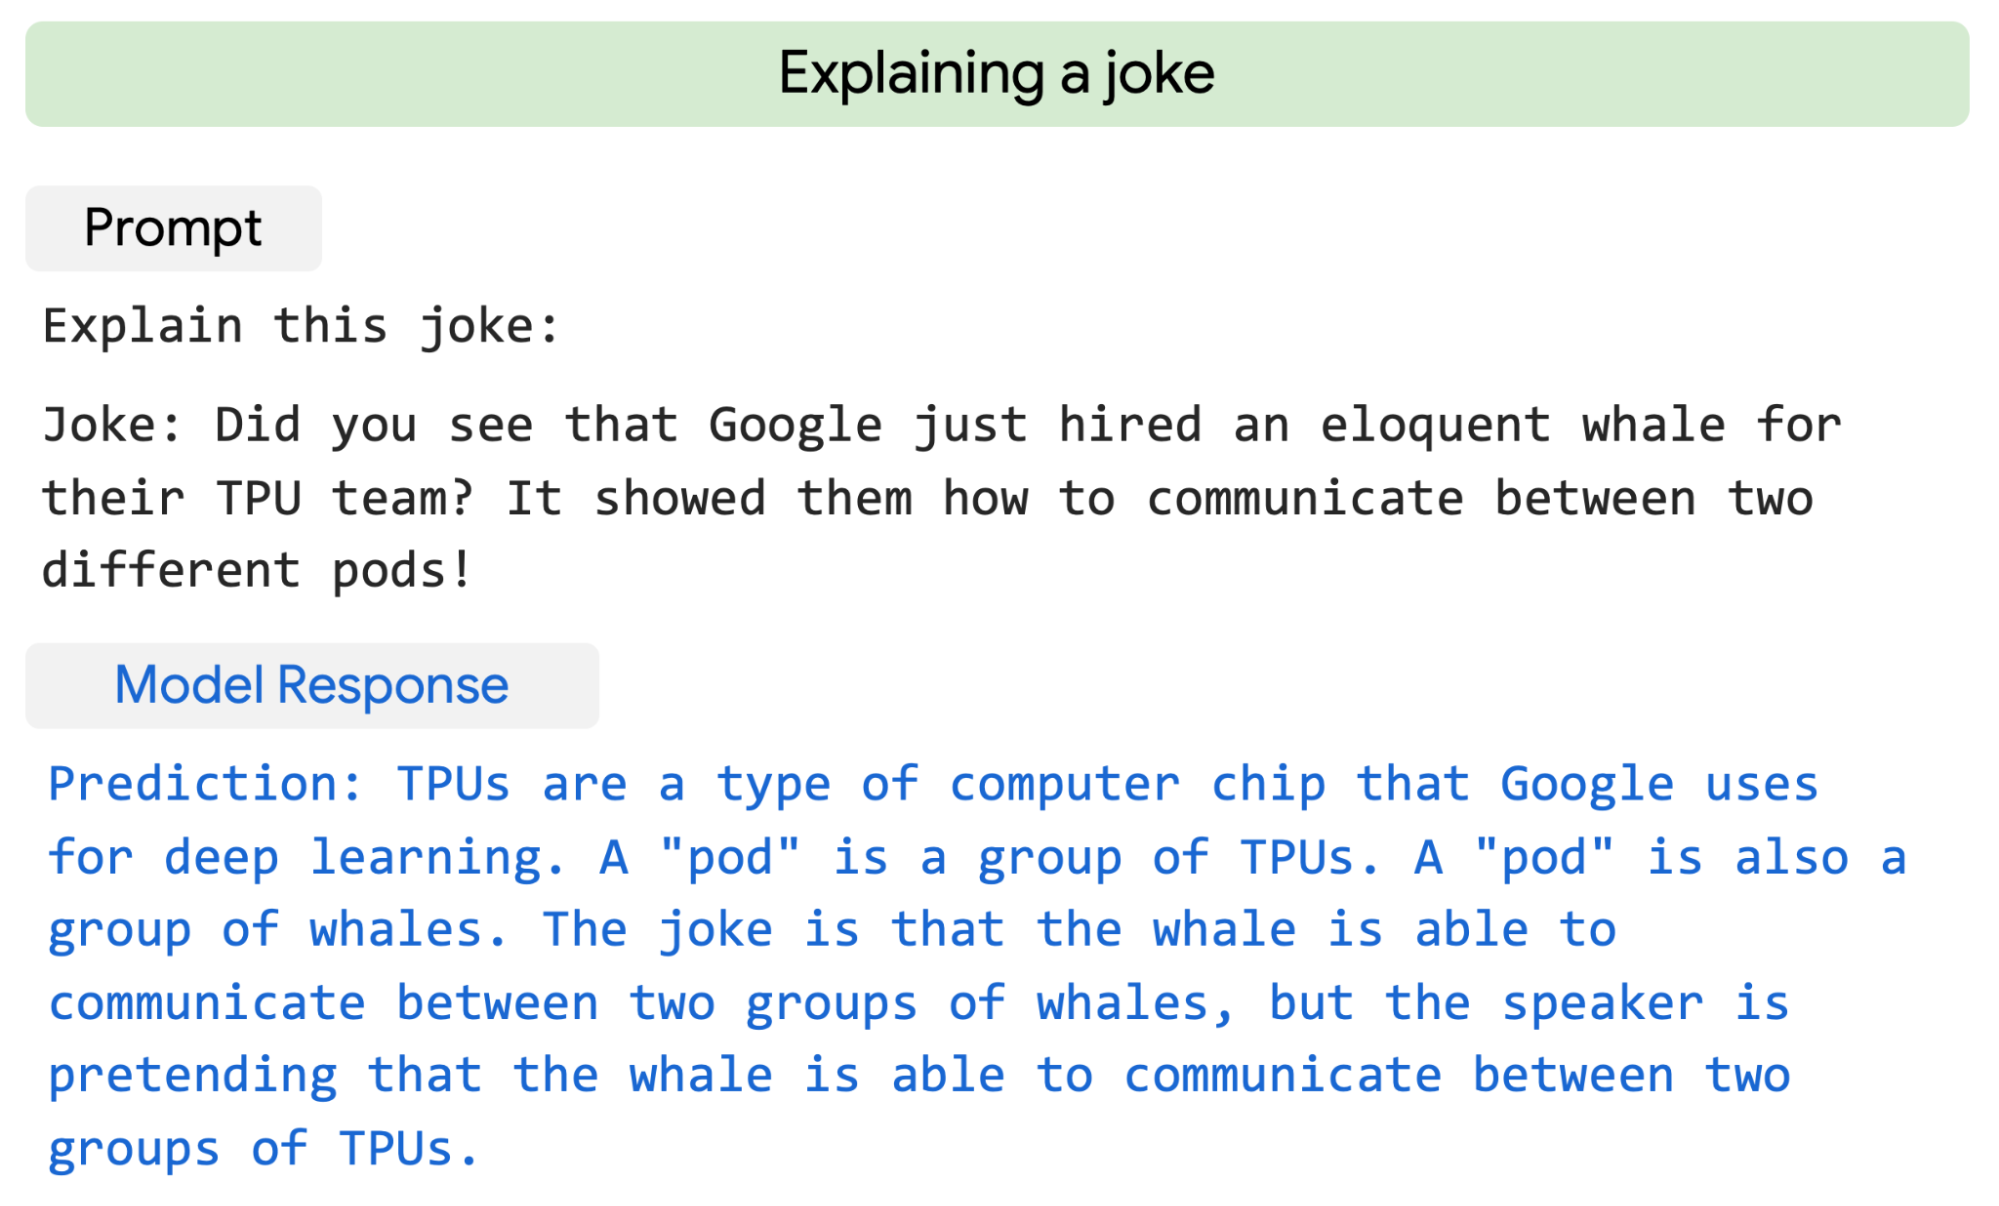 Google PaLM erklärt den Sinn eines Witzes